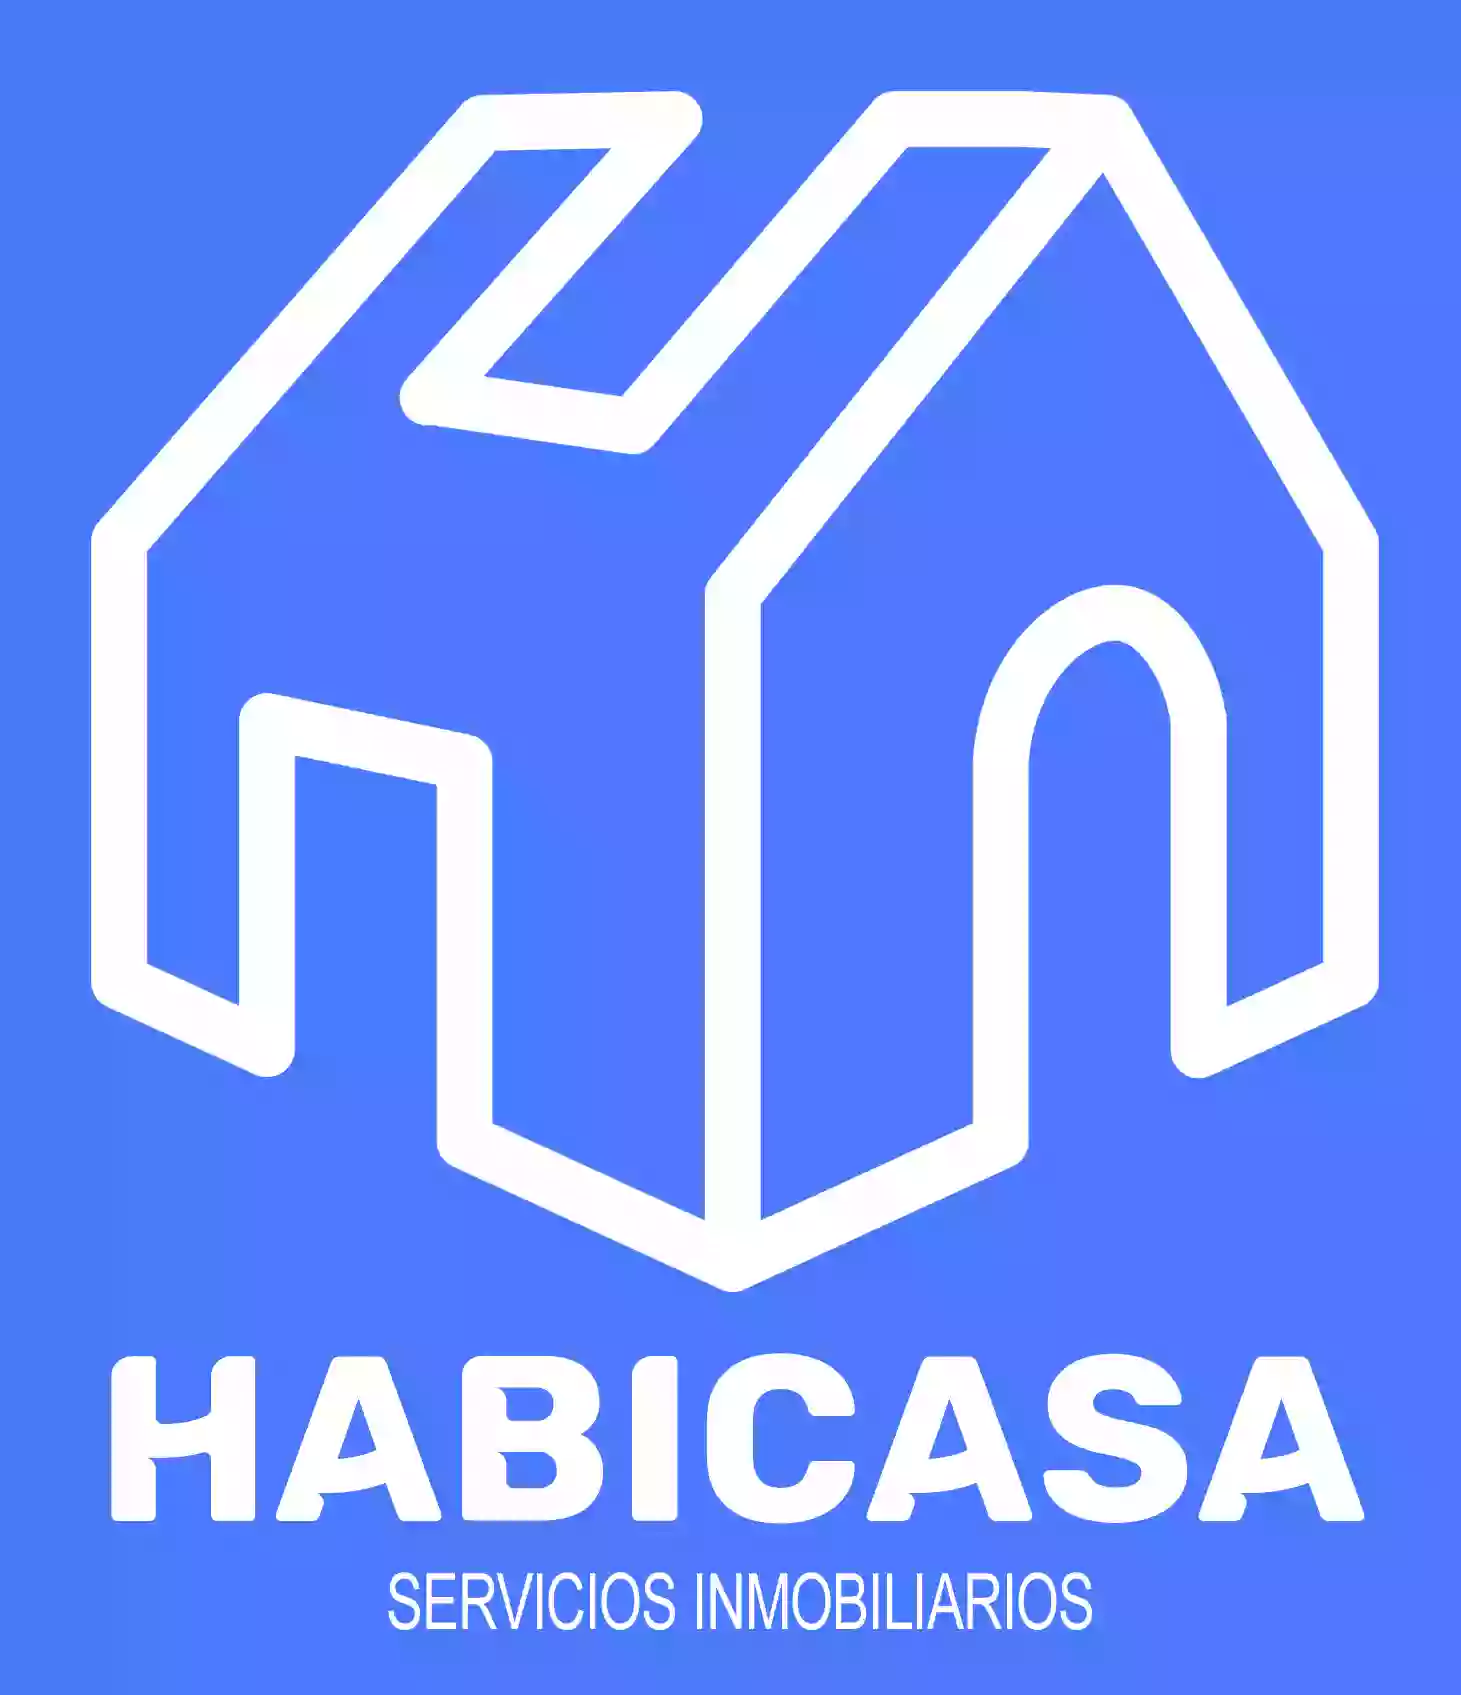 Inmobiliaria Habicasa - Inmobiliaria en Coslada